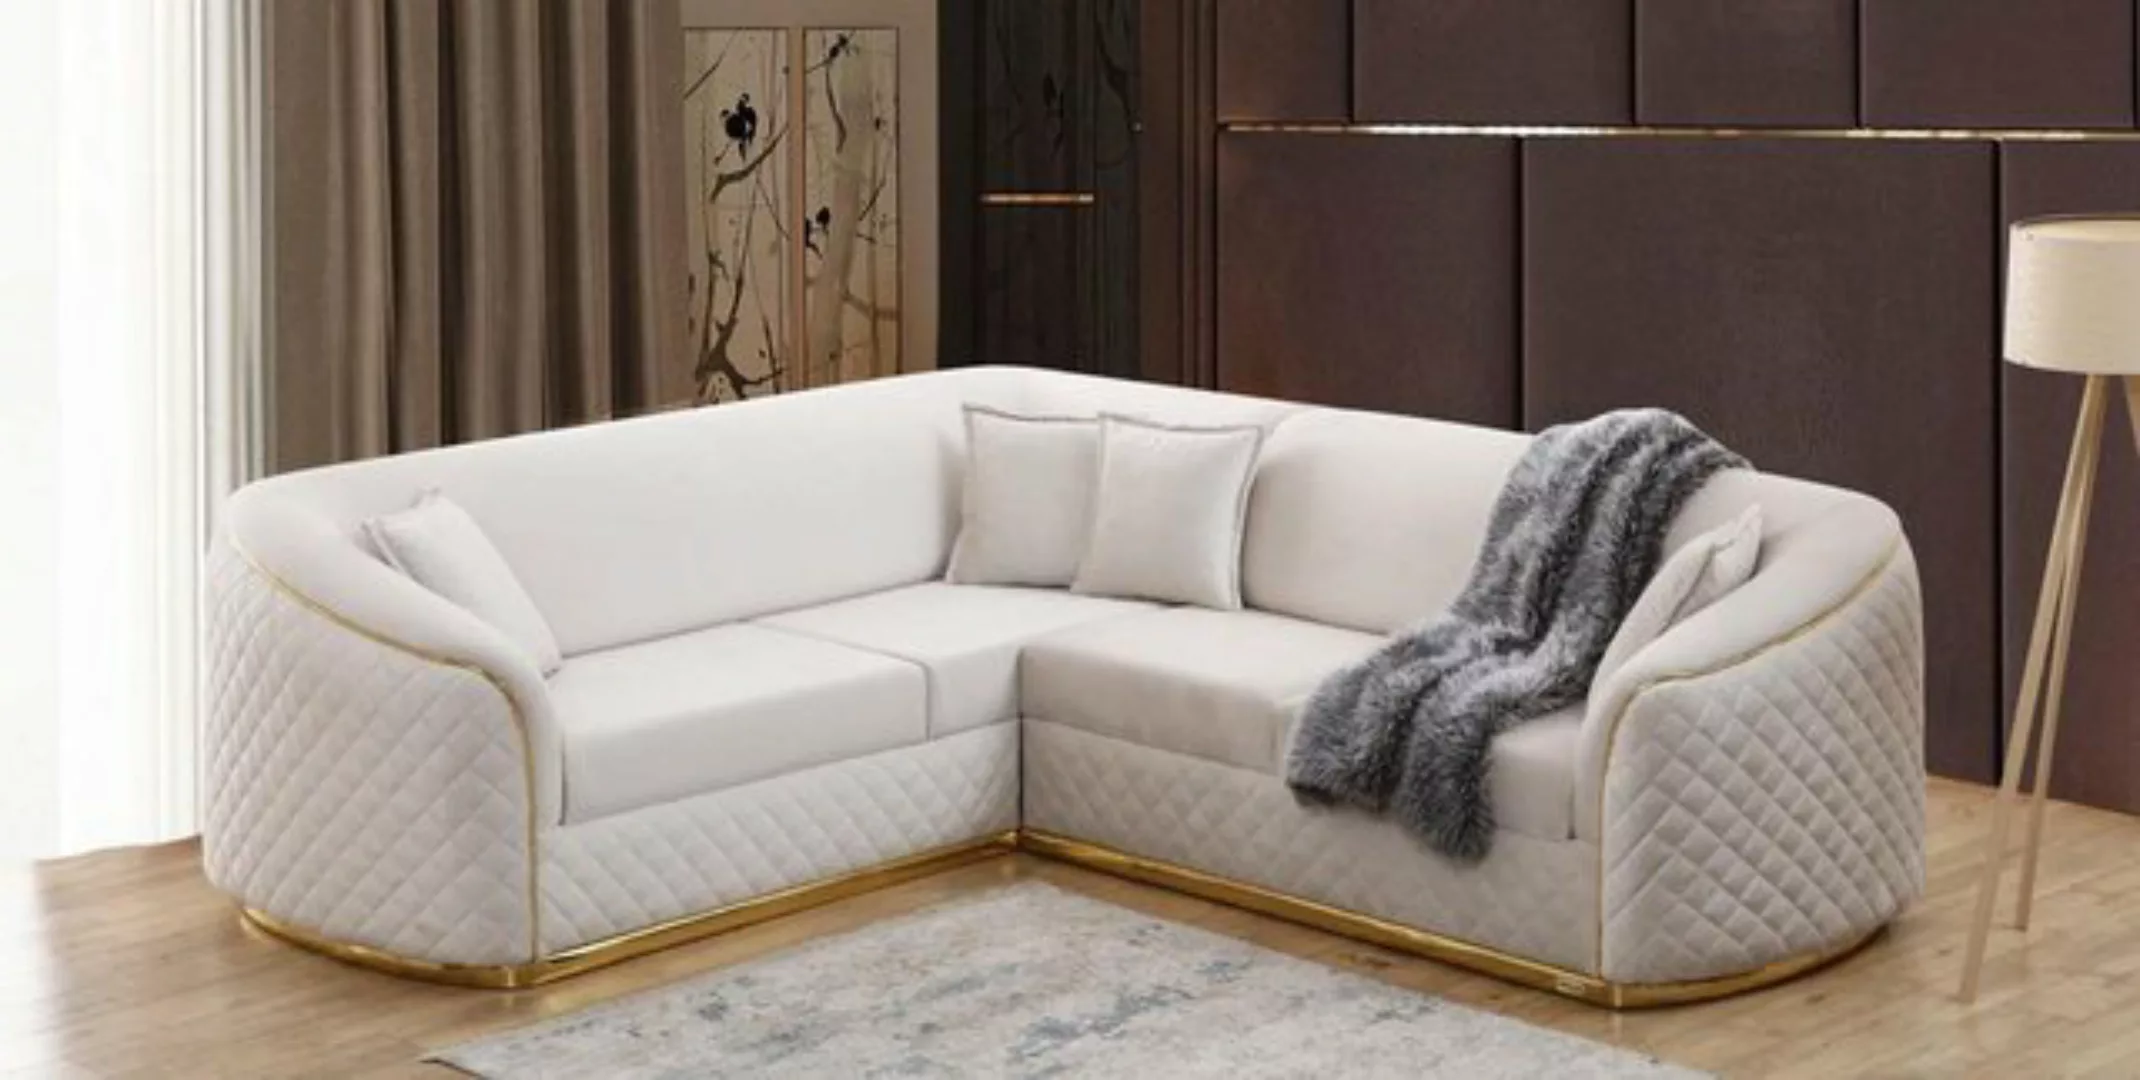 JVmoebel Ecksofa Weiße Eckcouch Wohnzimmer Eckgarnitur Sofa Couch Textil Ec günstig online kaufen